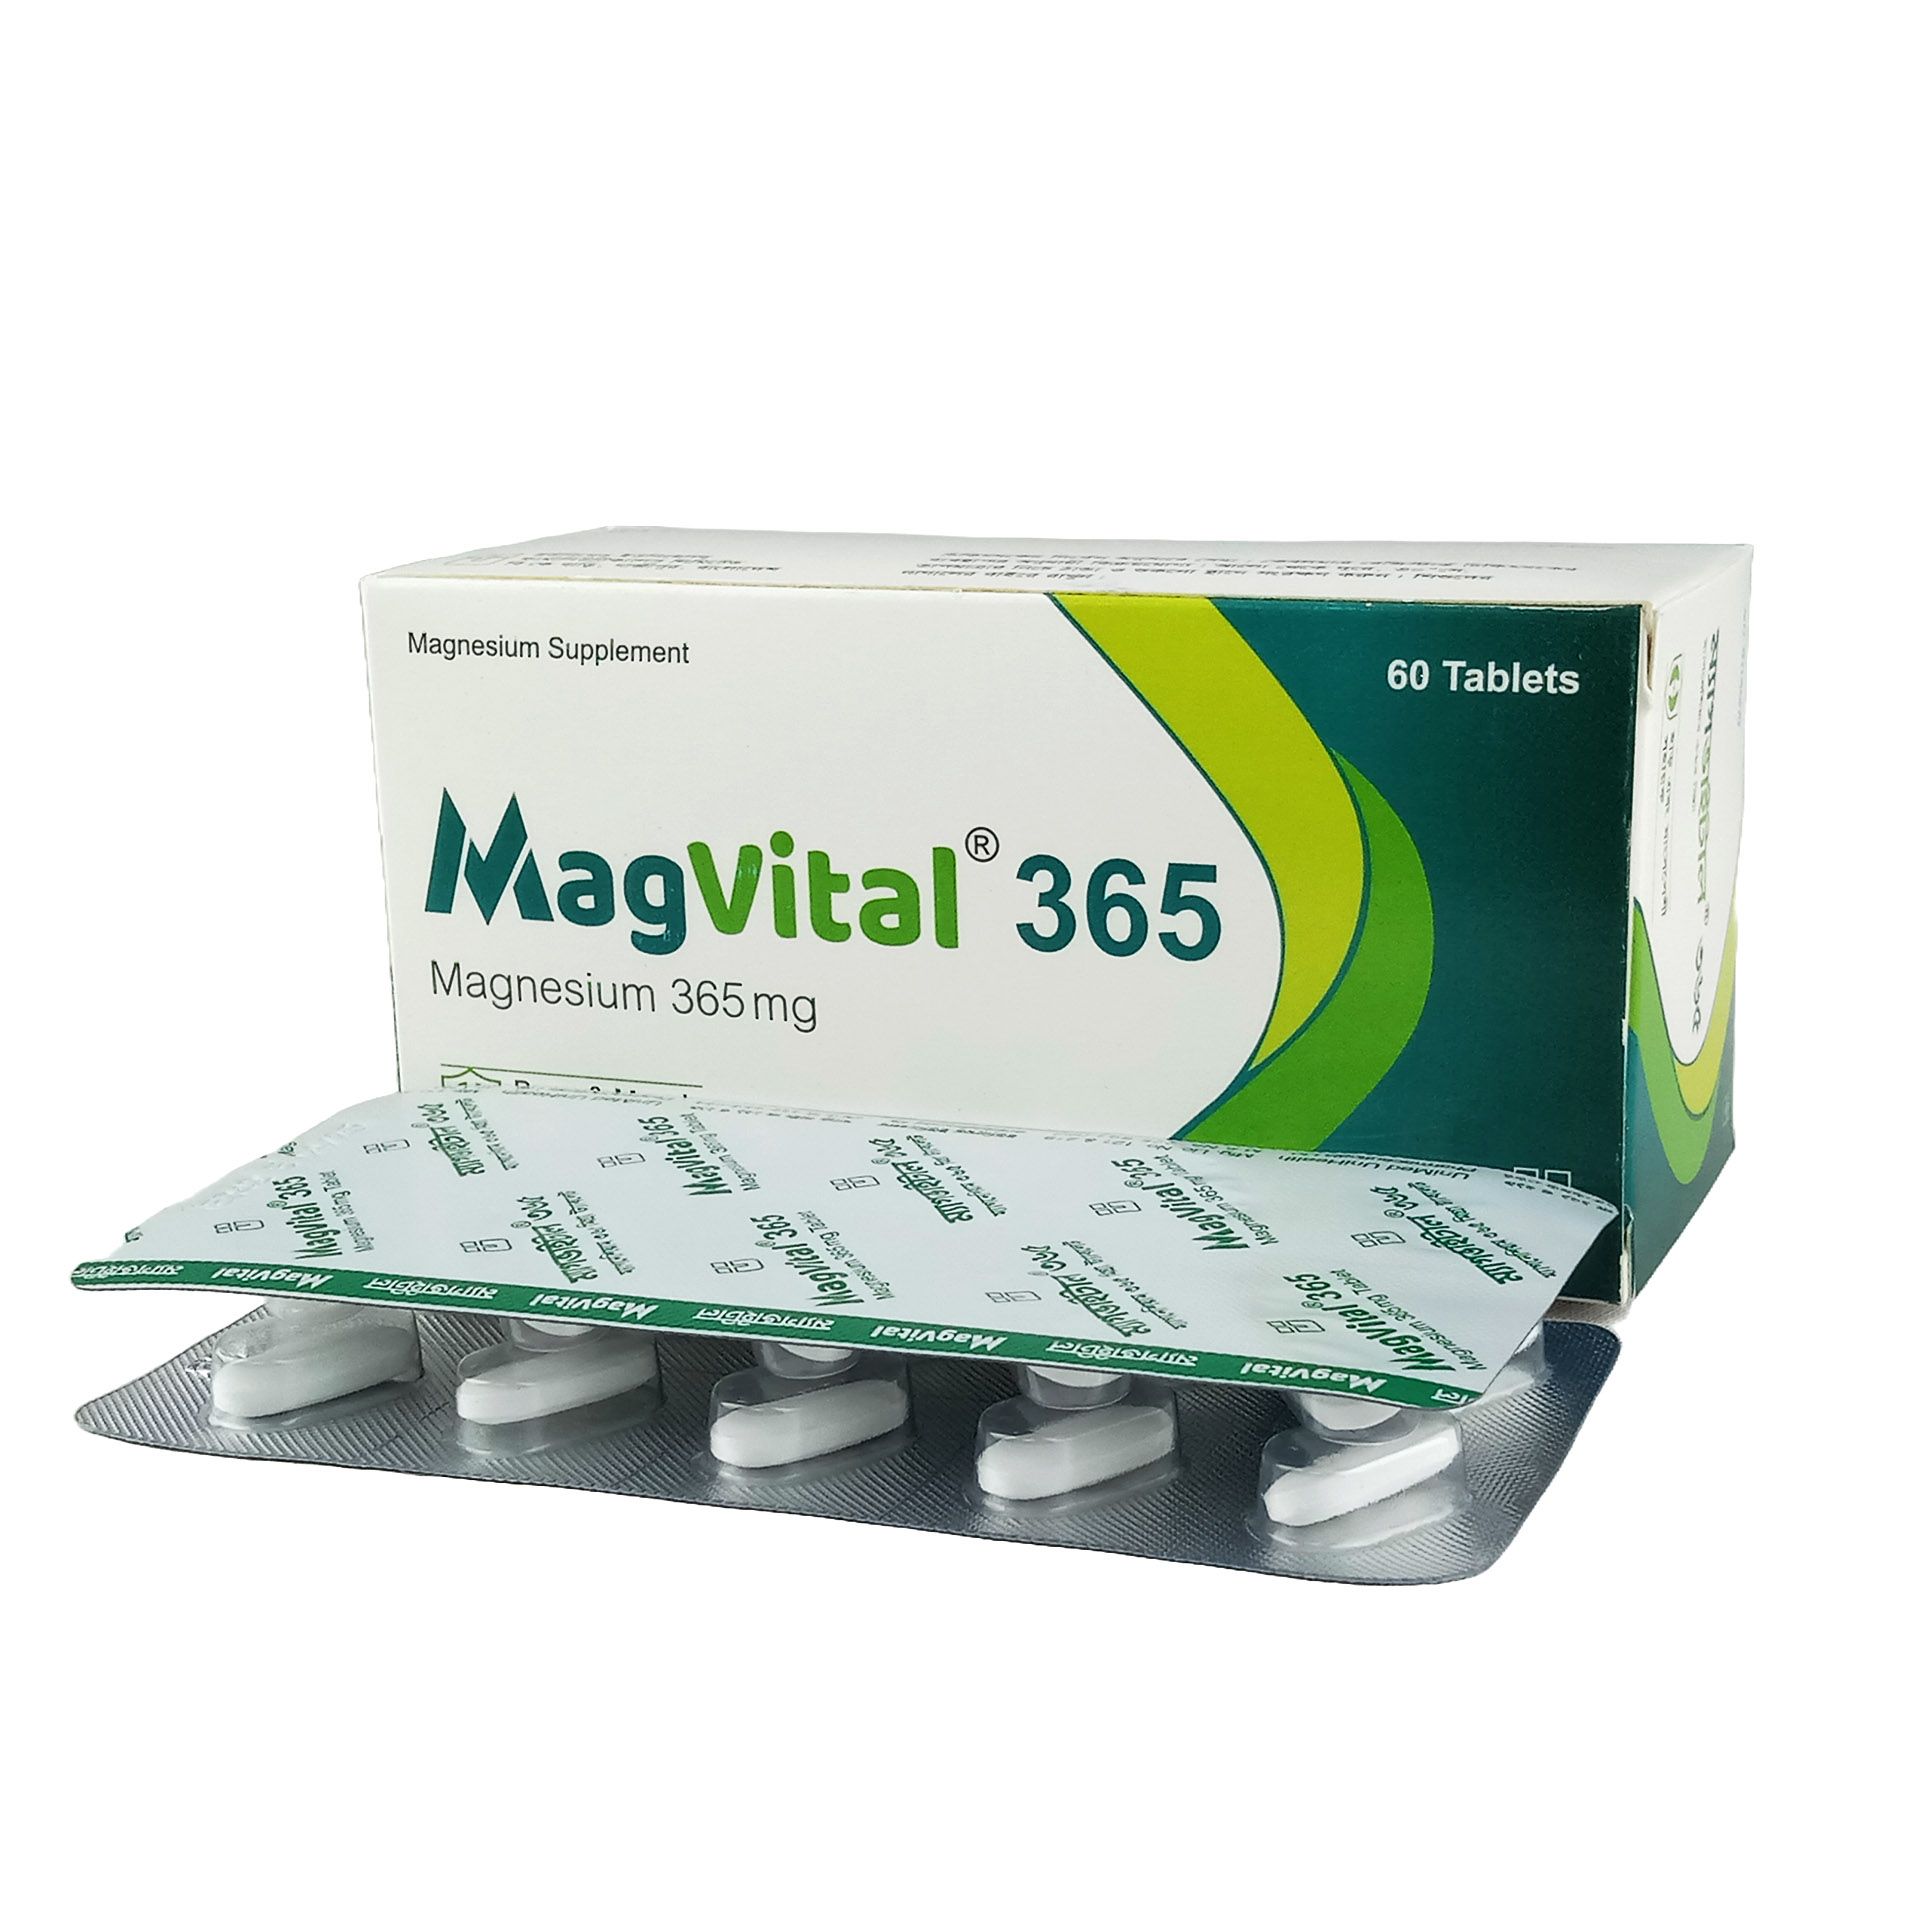 Magvital 365mg Tablet